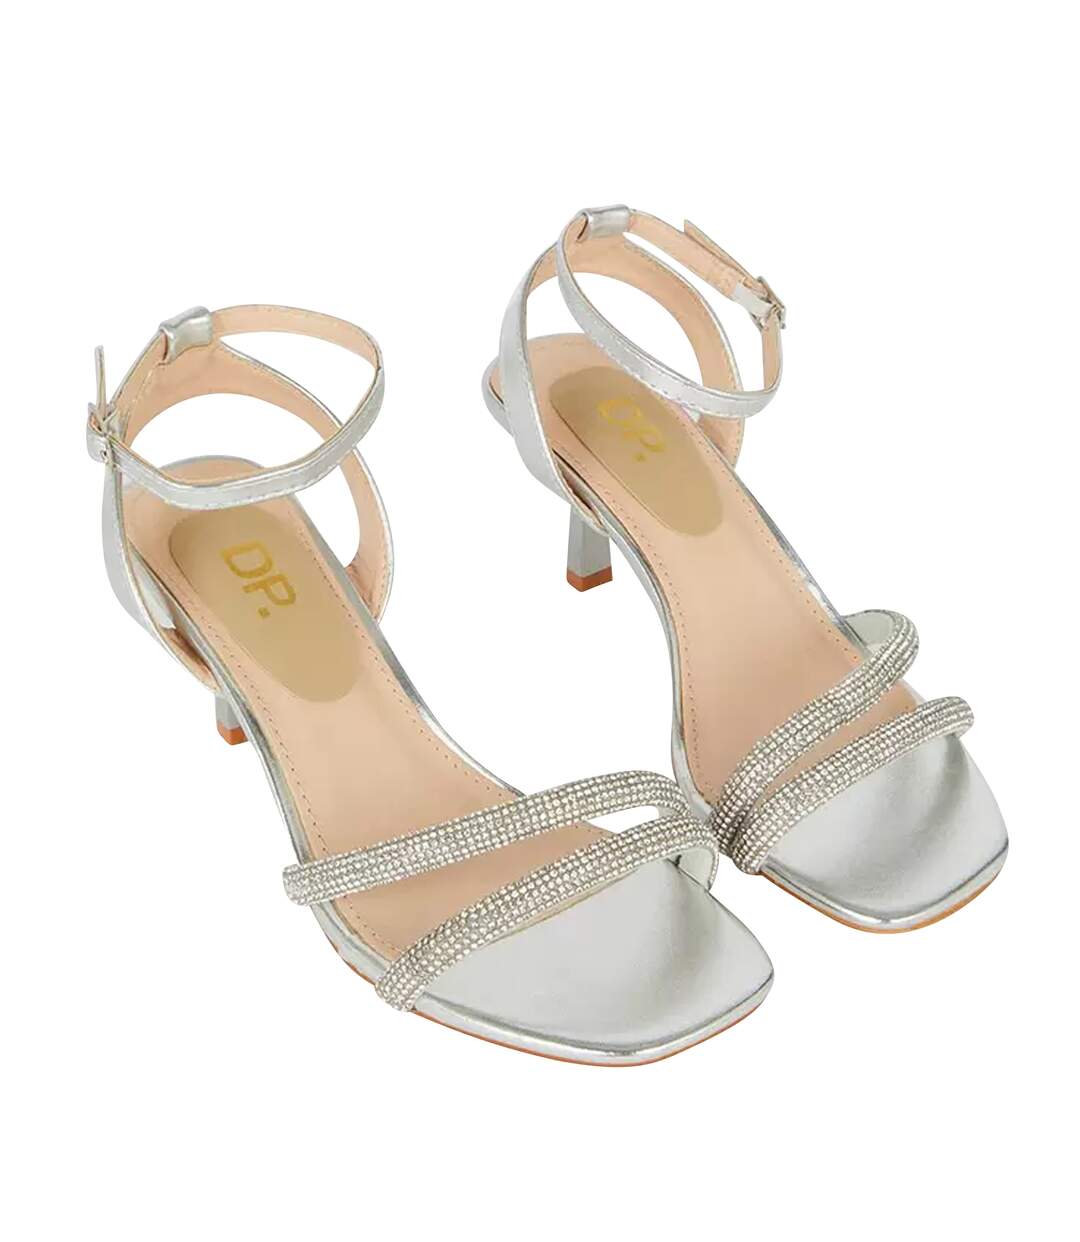 Sexy Silver Heels - Lace-Up Heels - Leg-Wrap Heels - Strappy Silver Heels -  $33.00 - Lulus